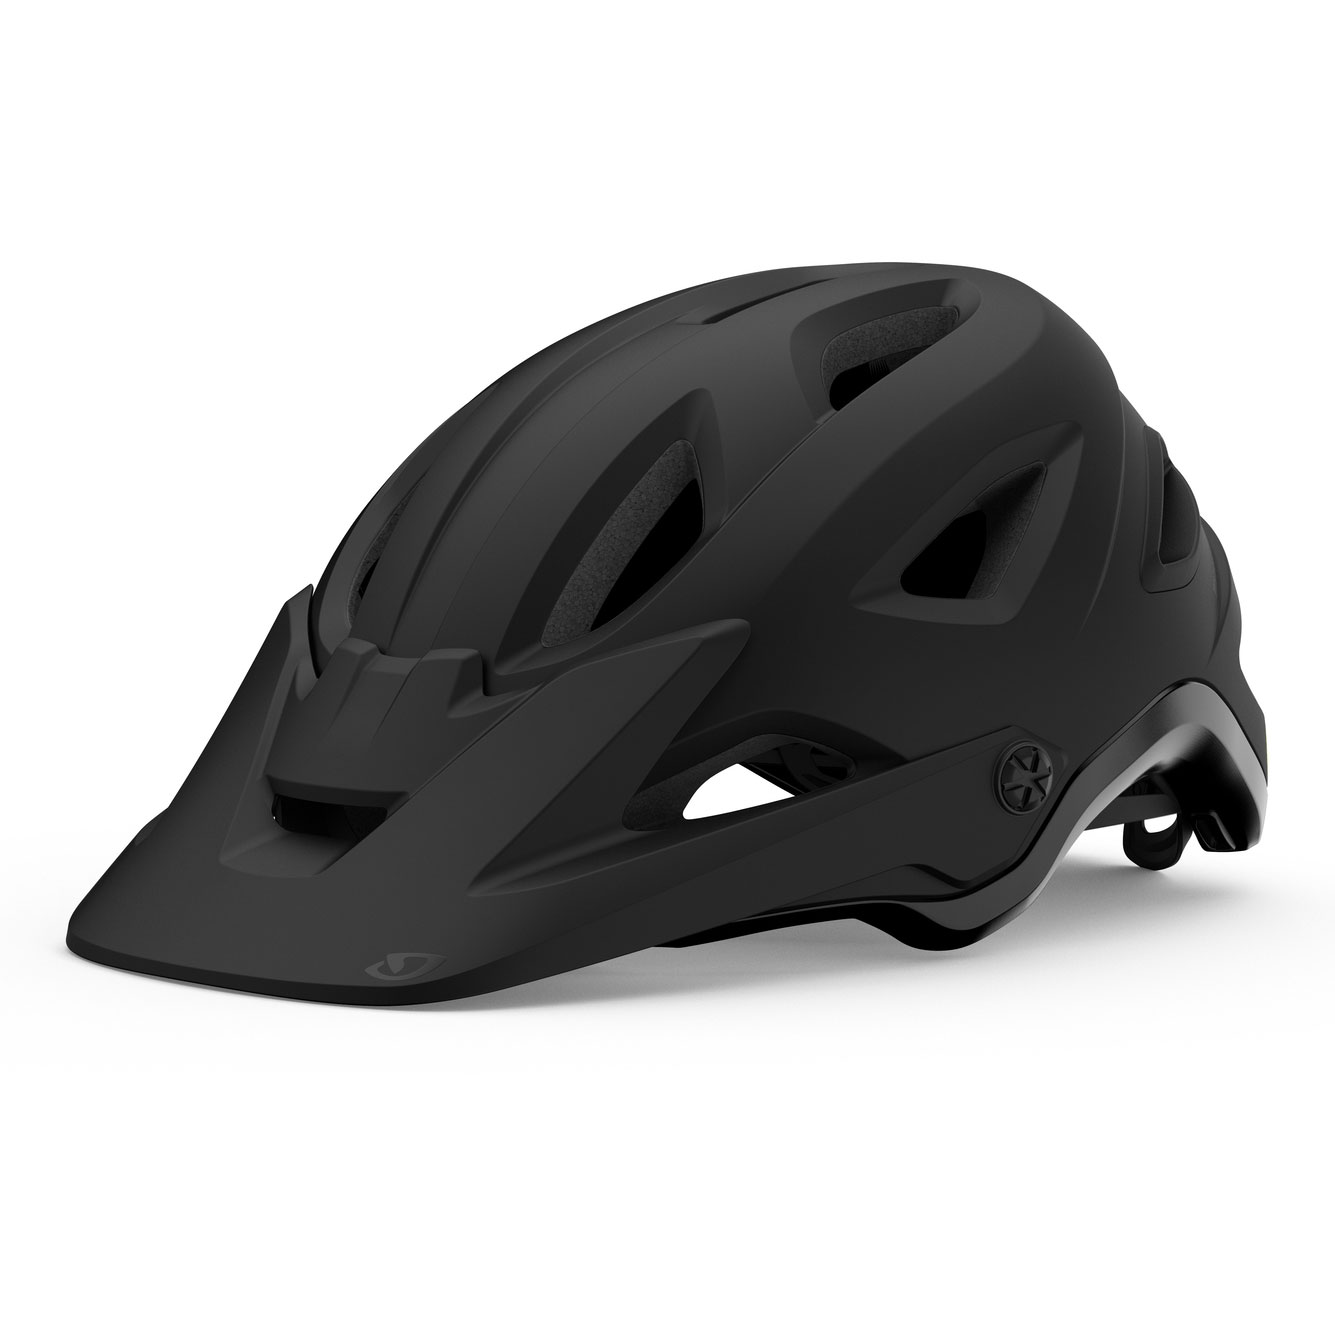 Produktbild von Giro Montaro MIPS II MTB Helm - matte black/gloss black